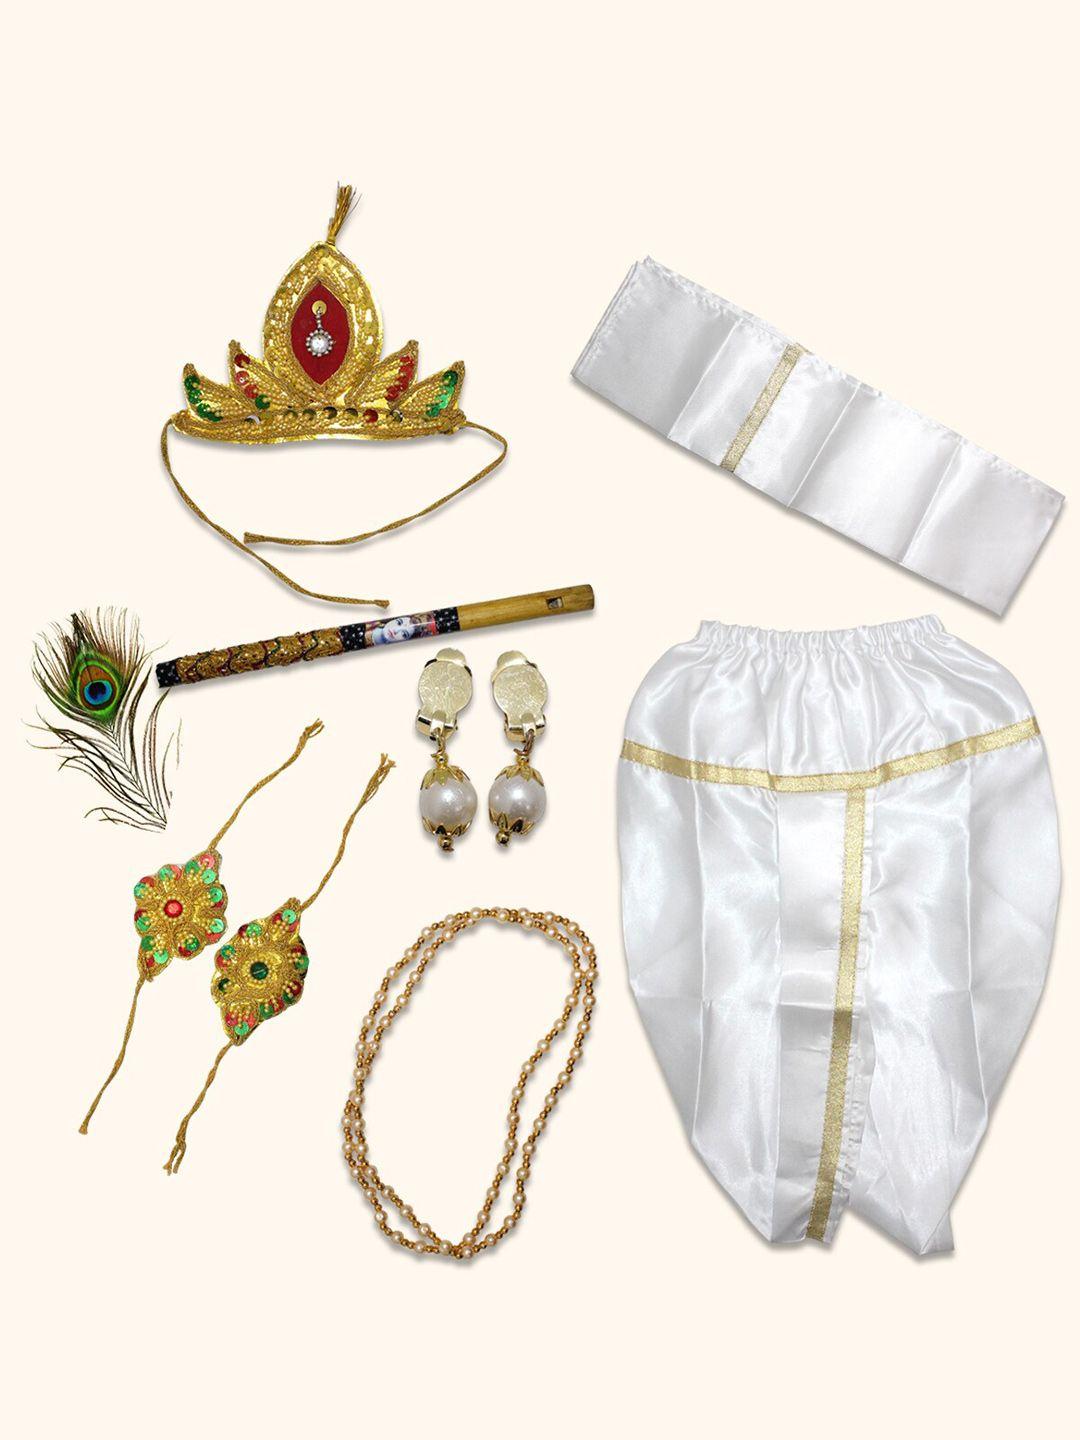 Born Babies Unisex Krishna Costume Ethnic Wear Cotton Clothing Set